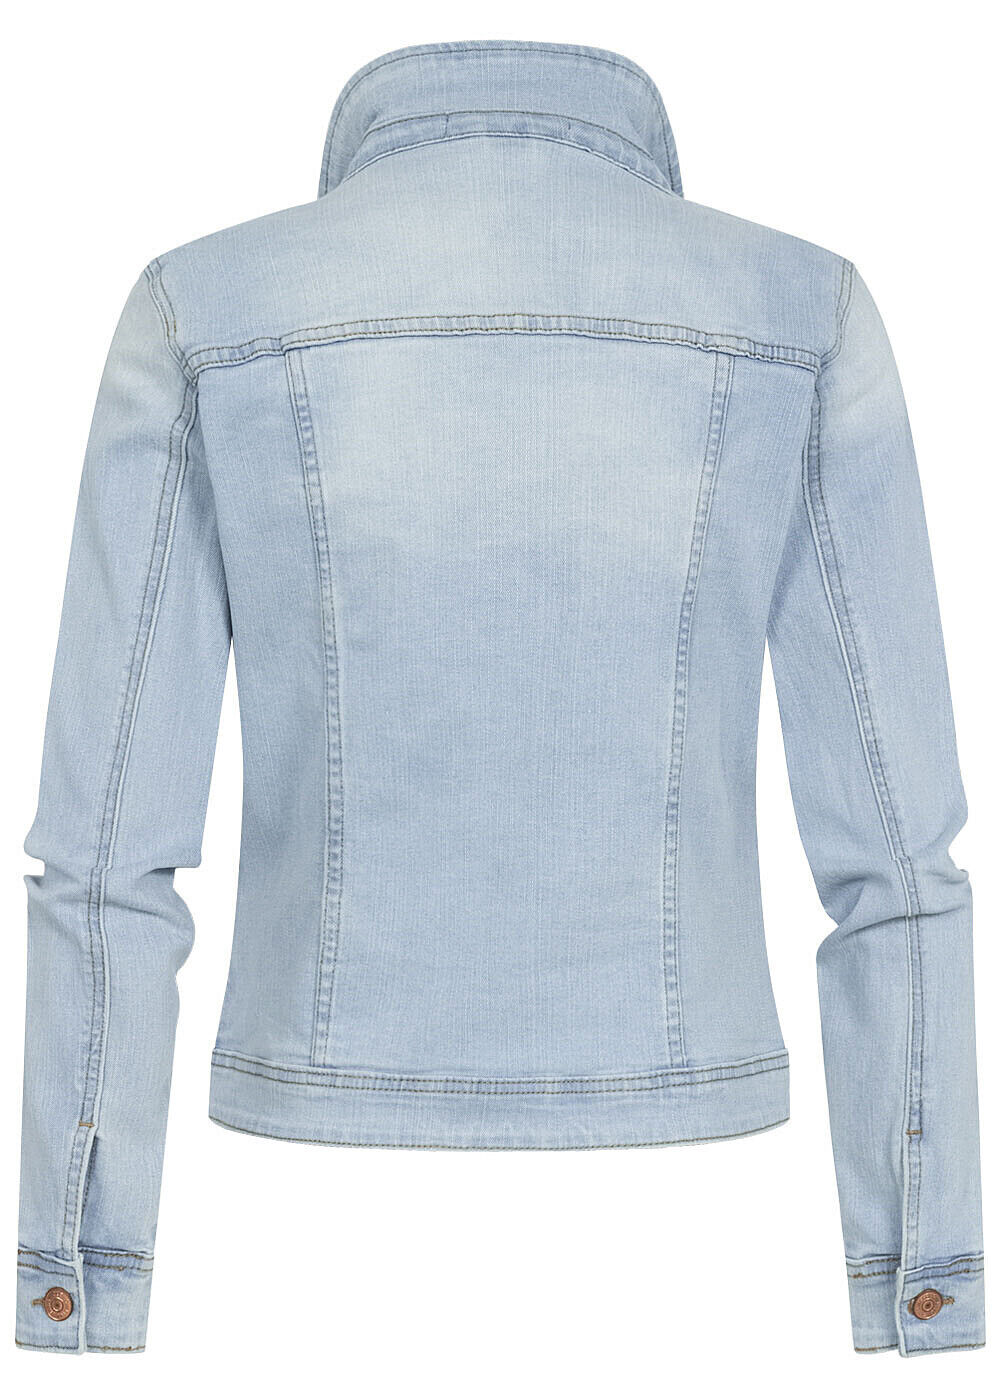 Damen Cloud5ive Jeans Jacke kurz Knopfleiste Brusttaschen hell blau N24027004